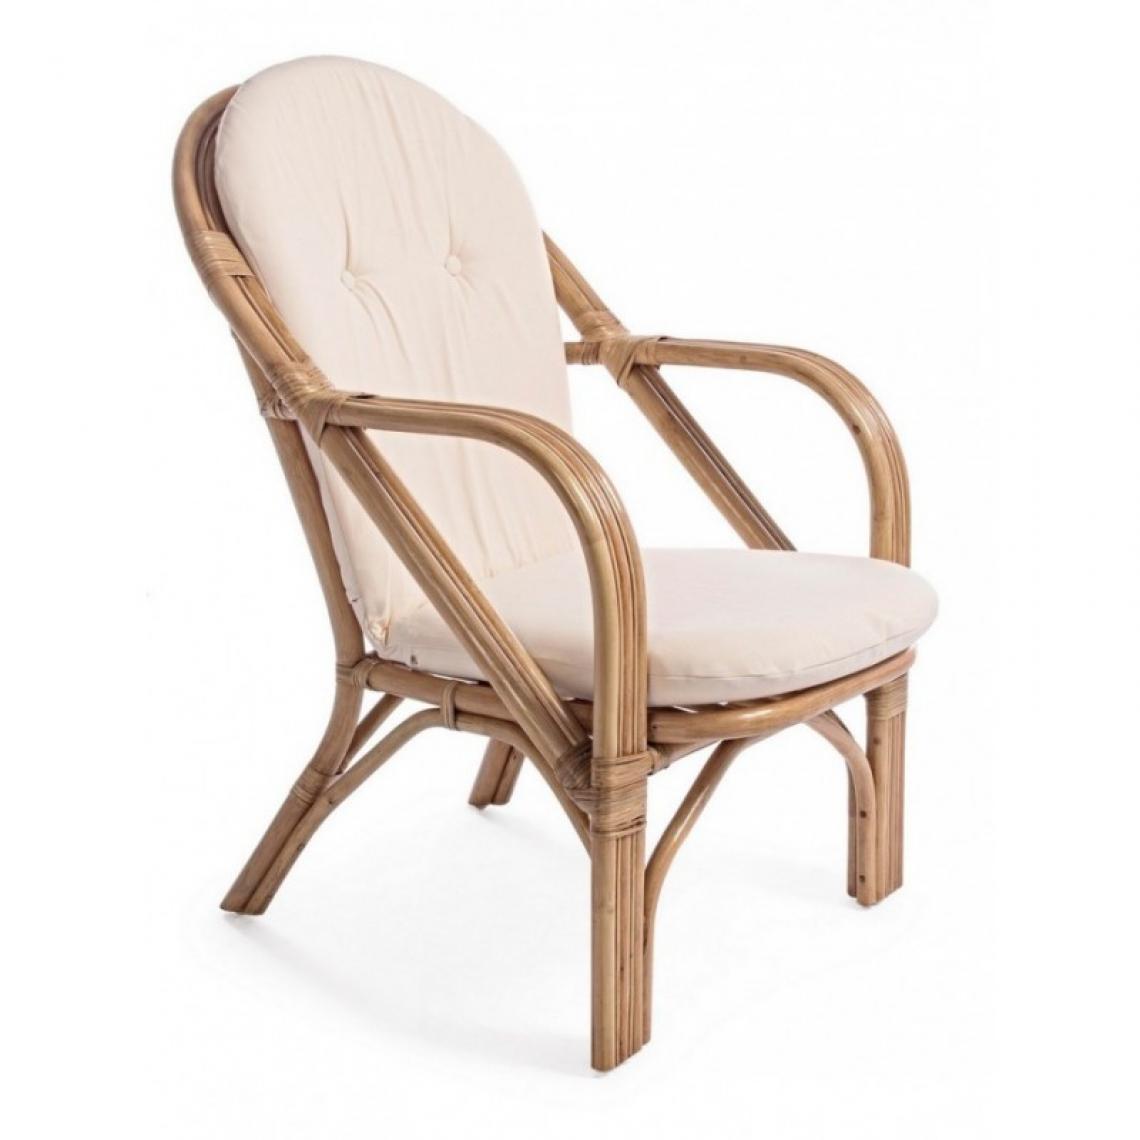 Webmarketpoint - Golf New fauteuil de jardin 64x77x89h cm - Ensembles tables et chaises